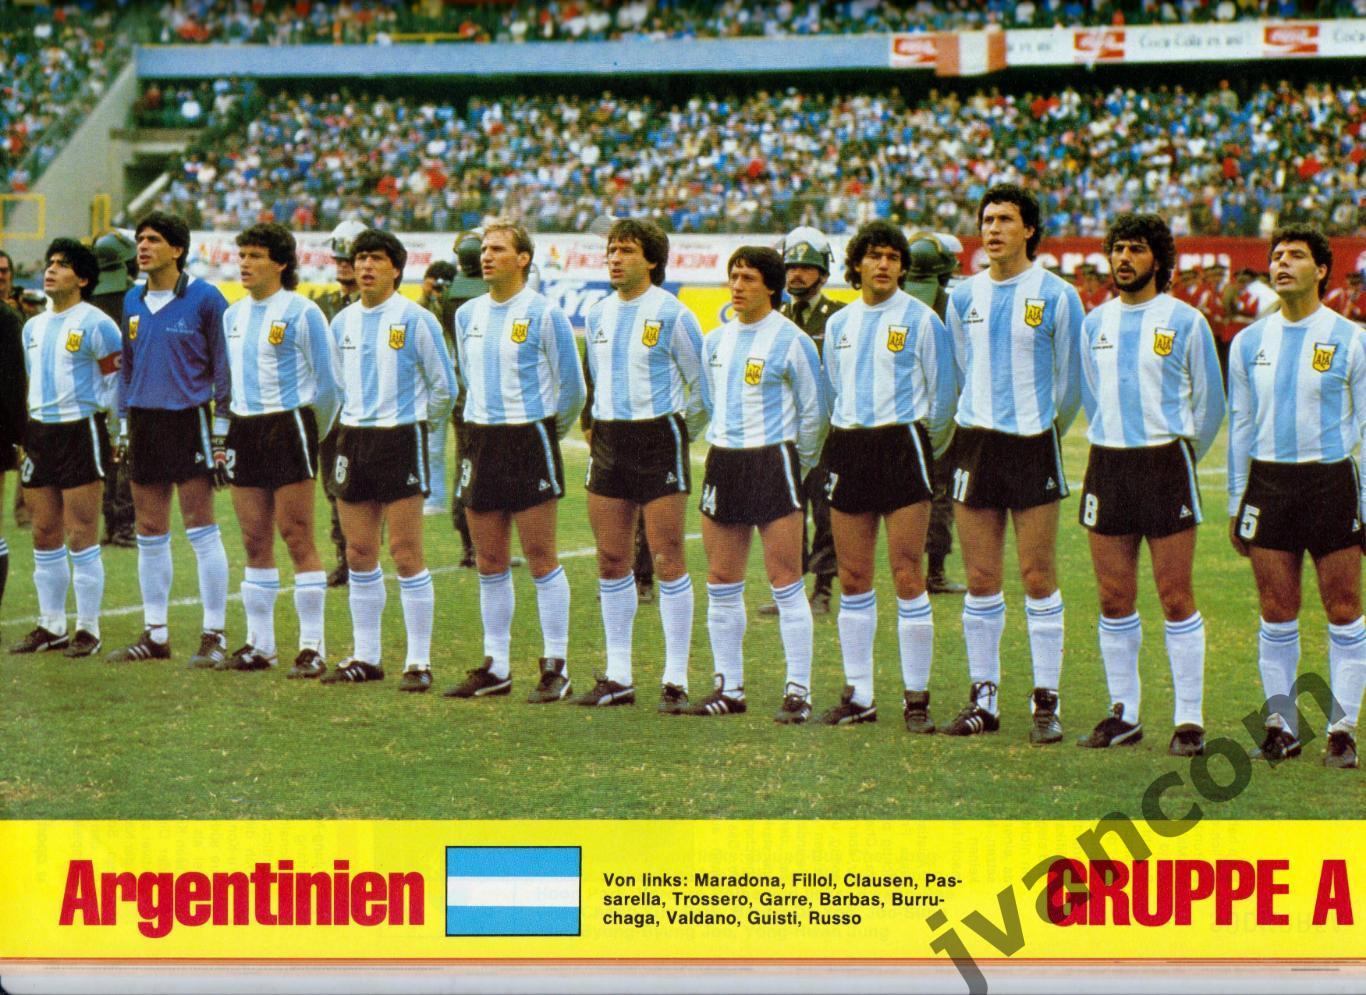 SPORT ILLUSTRIERTE. Чемпионат Мира по футболу 1986 года. Превью участников. 7